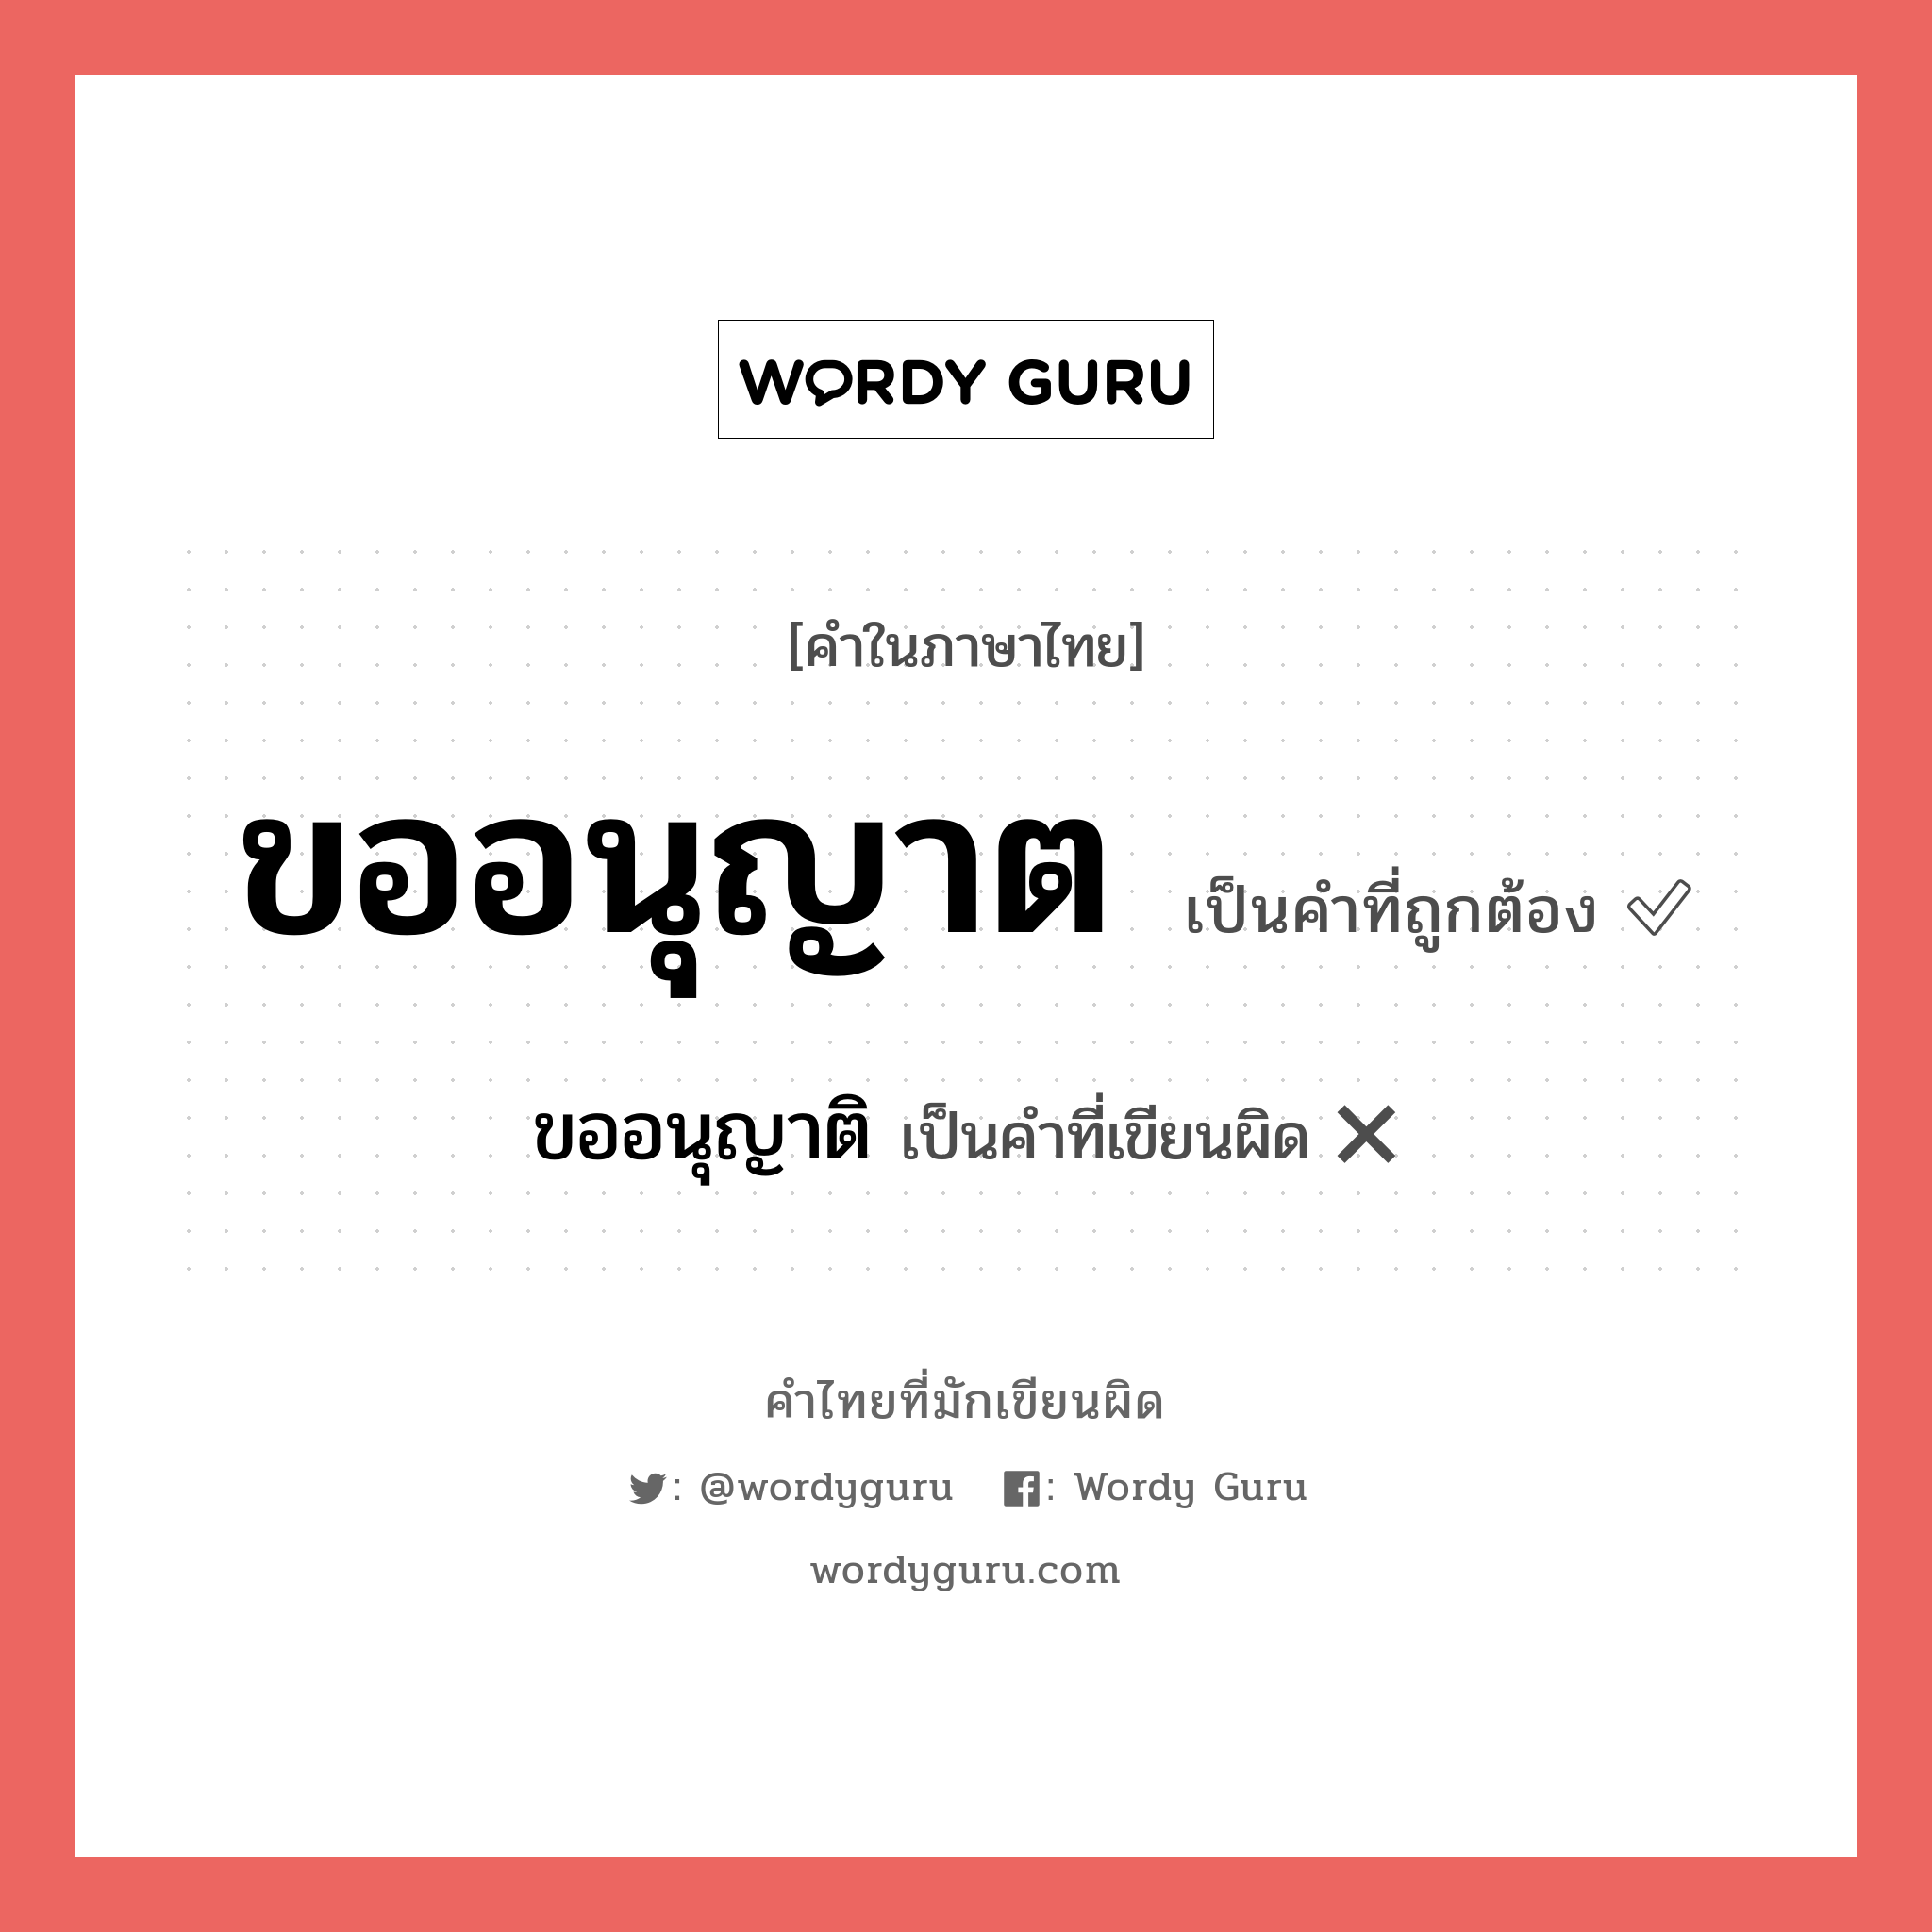 ขออนุญาต หรือ ขออนุญาติ คำไหนเขียนถูก?, คำในภาษาไทยที่มักเขียนผิด ขออนุญาต คำที่ผิด ❌ ขออนุญาติ